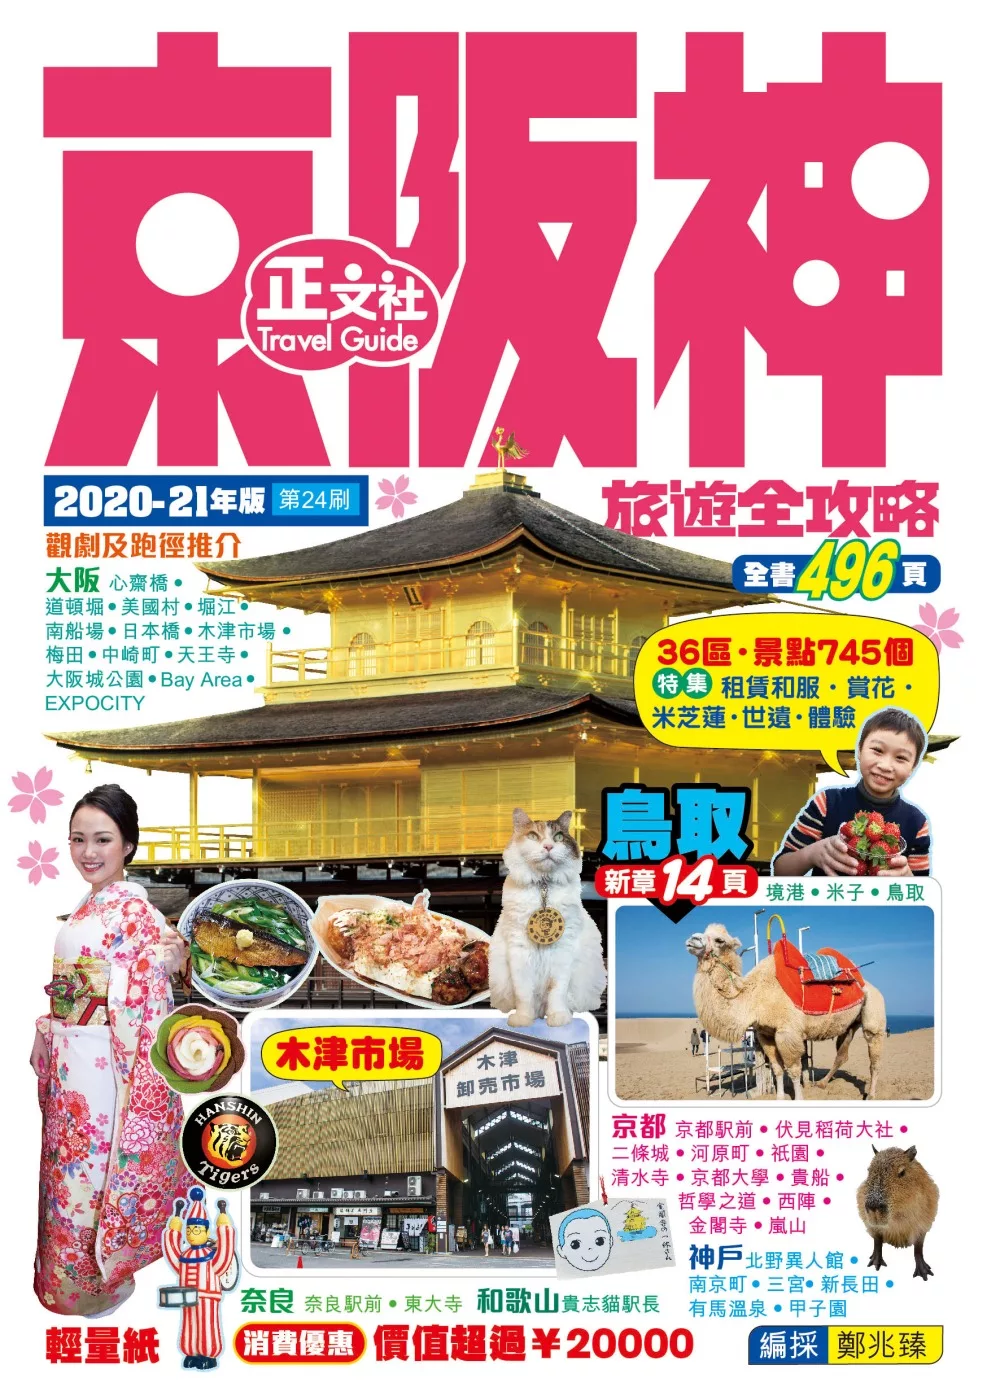 京阪神旅遊全攻略2020-21年版(第 24 刷)